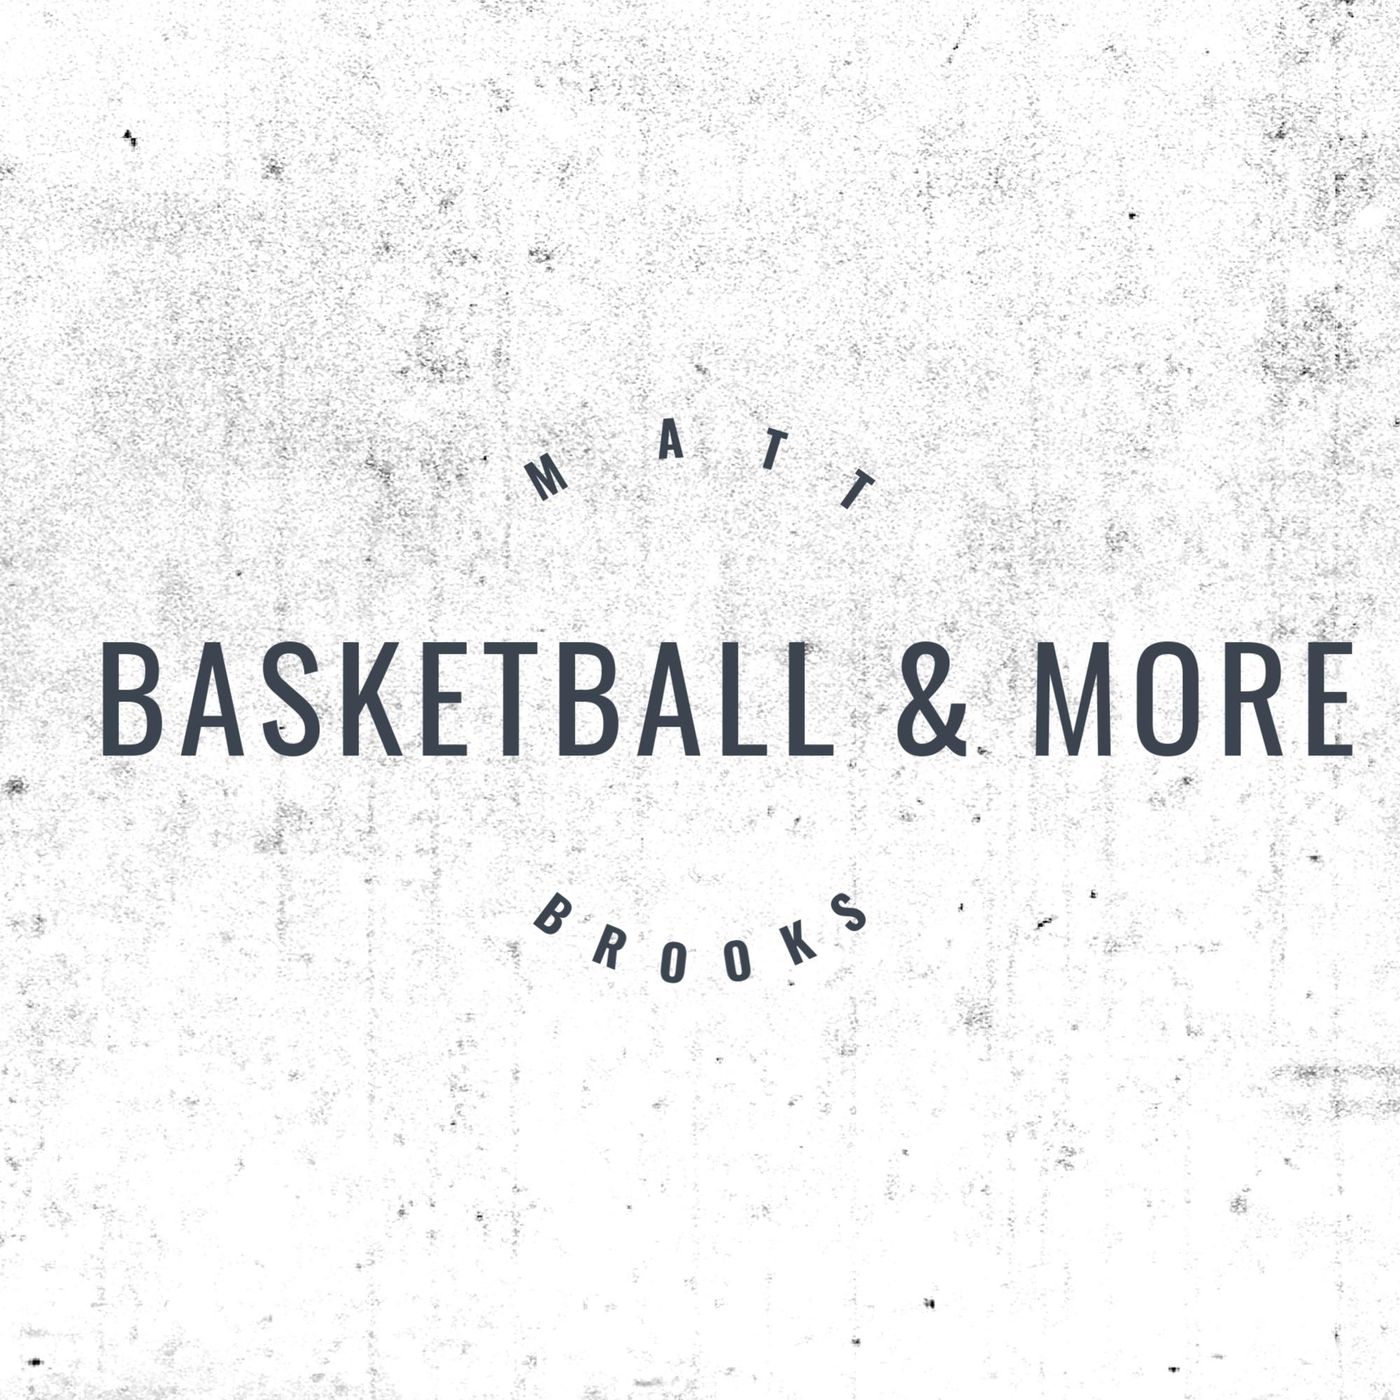 Basketball & More